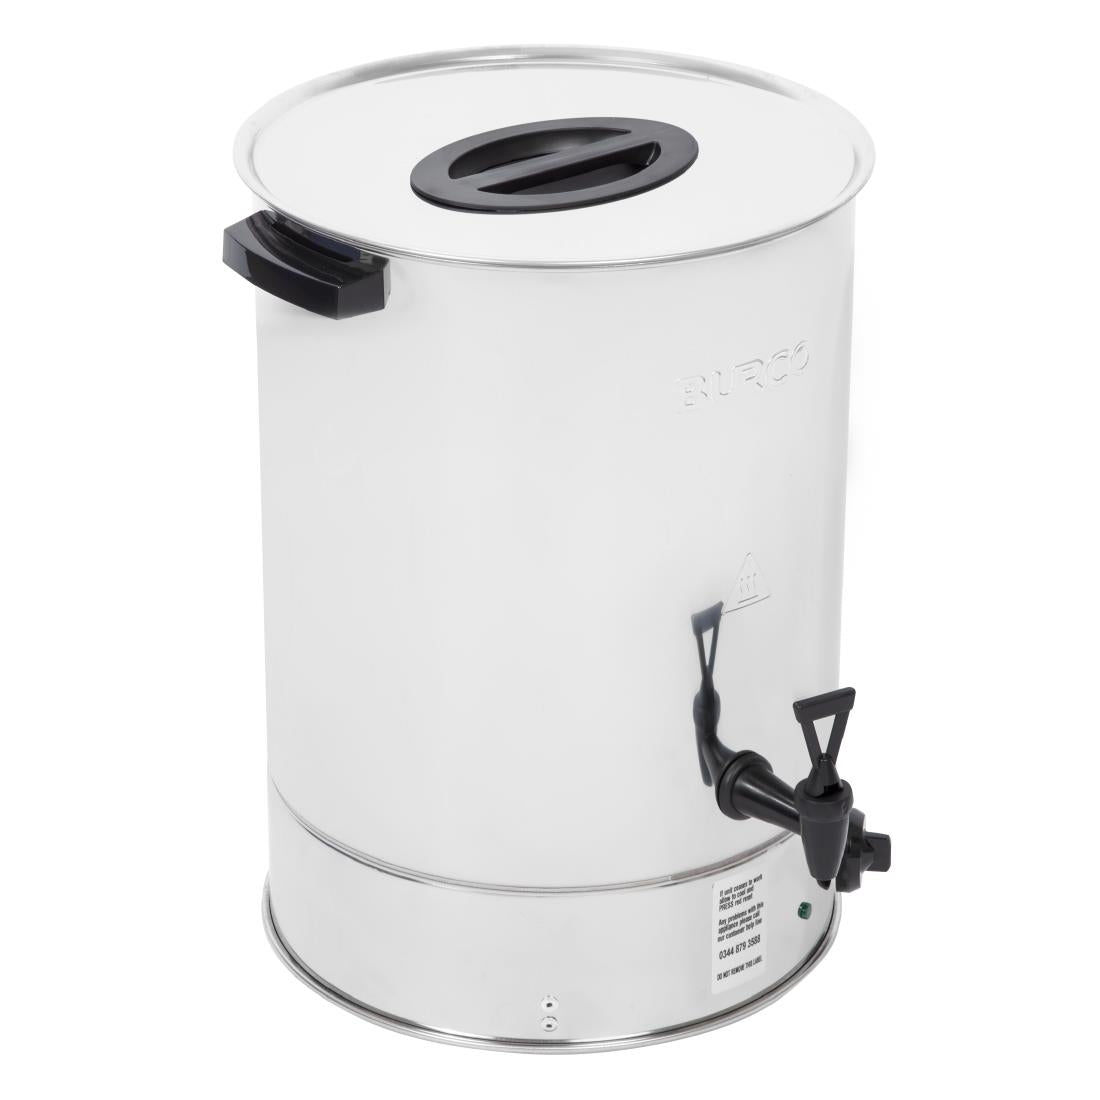 CE706 Burco Manual Fill Water Boiler 30Ltr